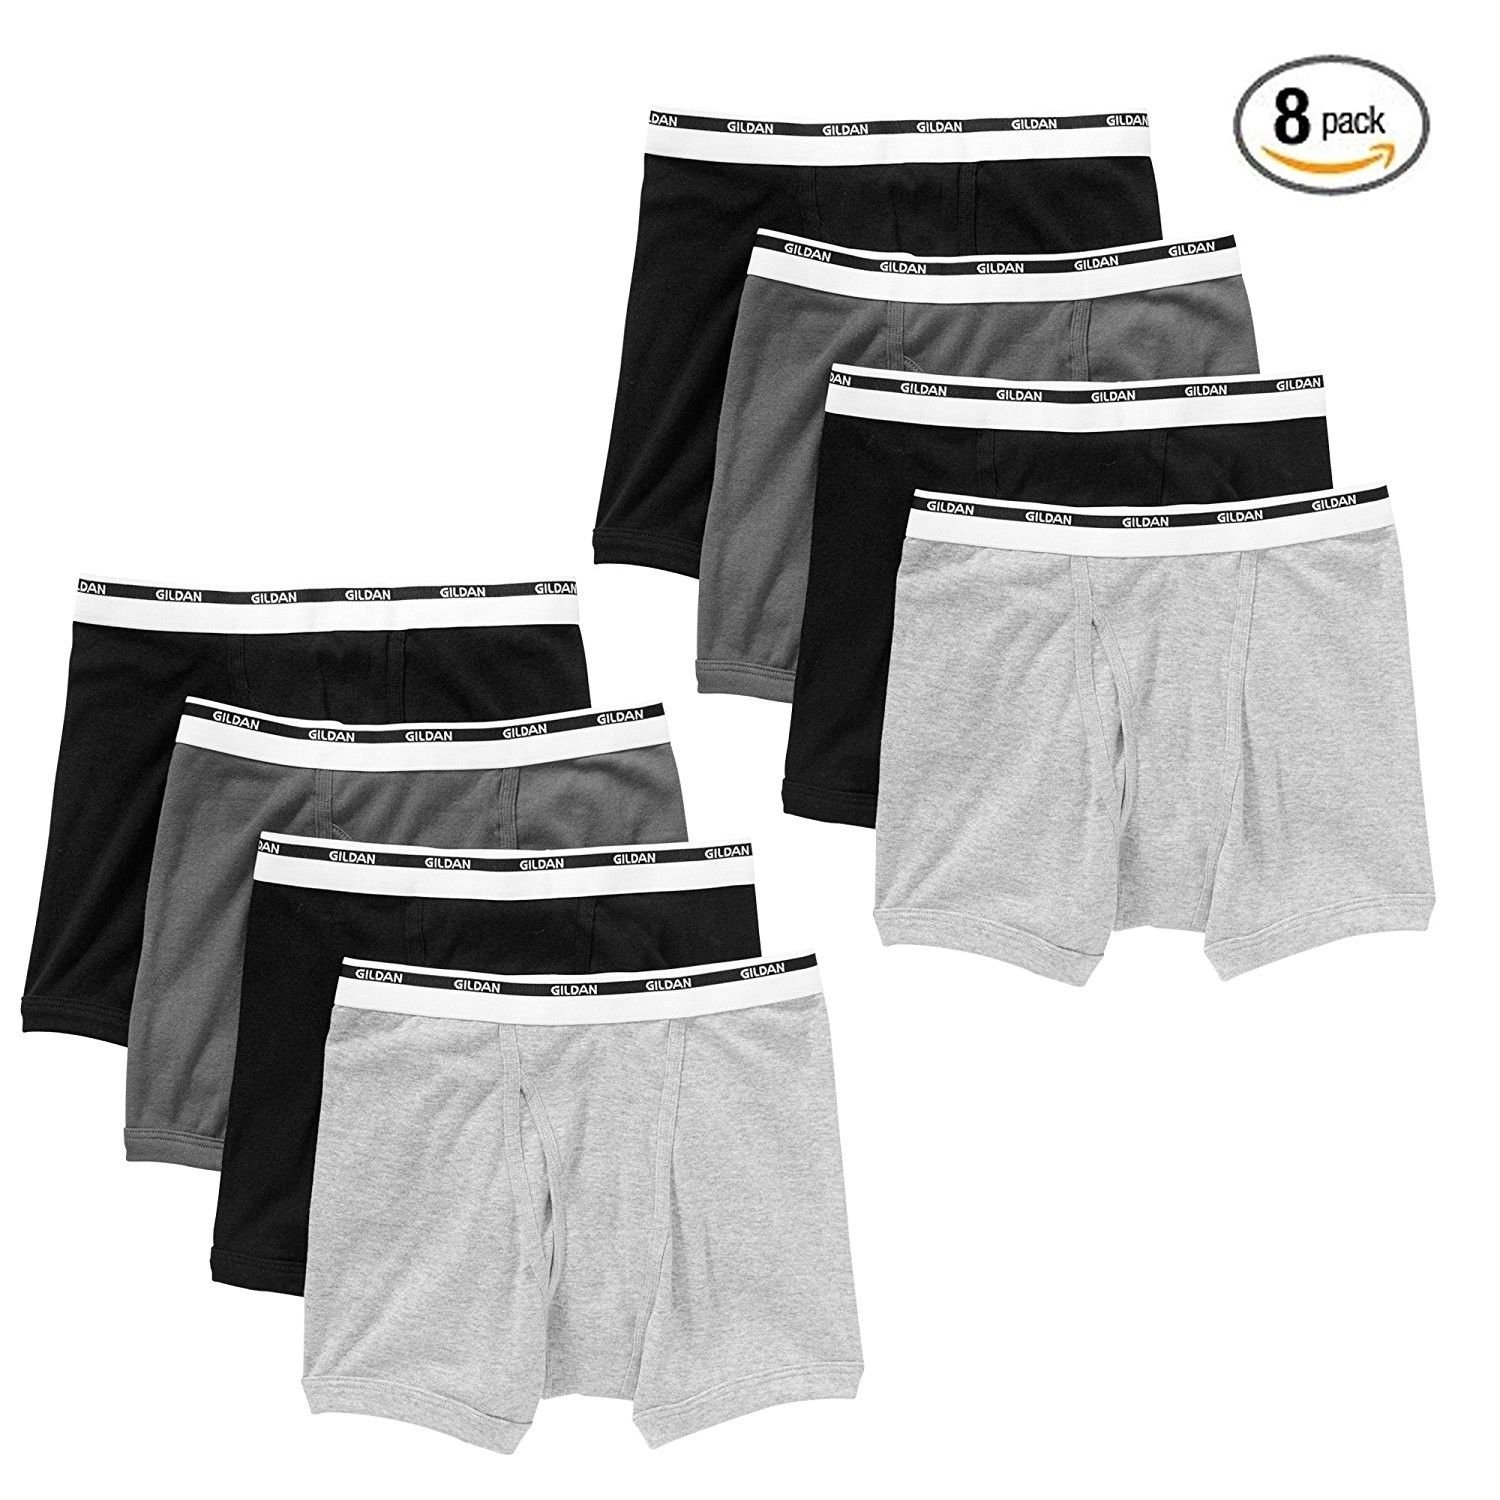 Gildan Men's Boxer Briefs Premium Cotton Underwear 8-Pack White or ...